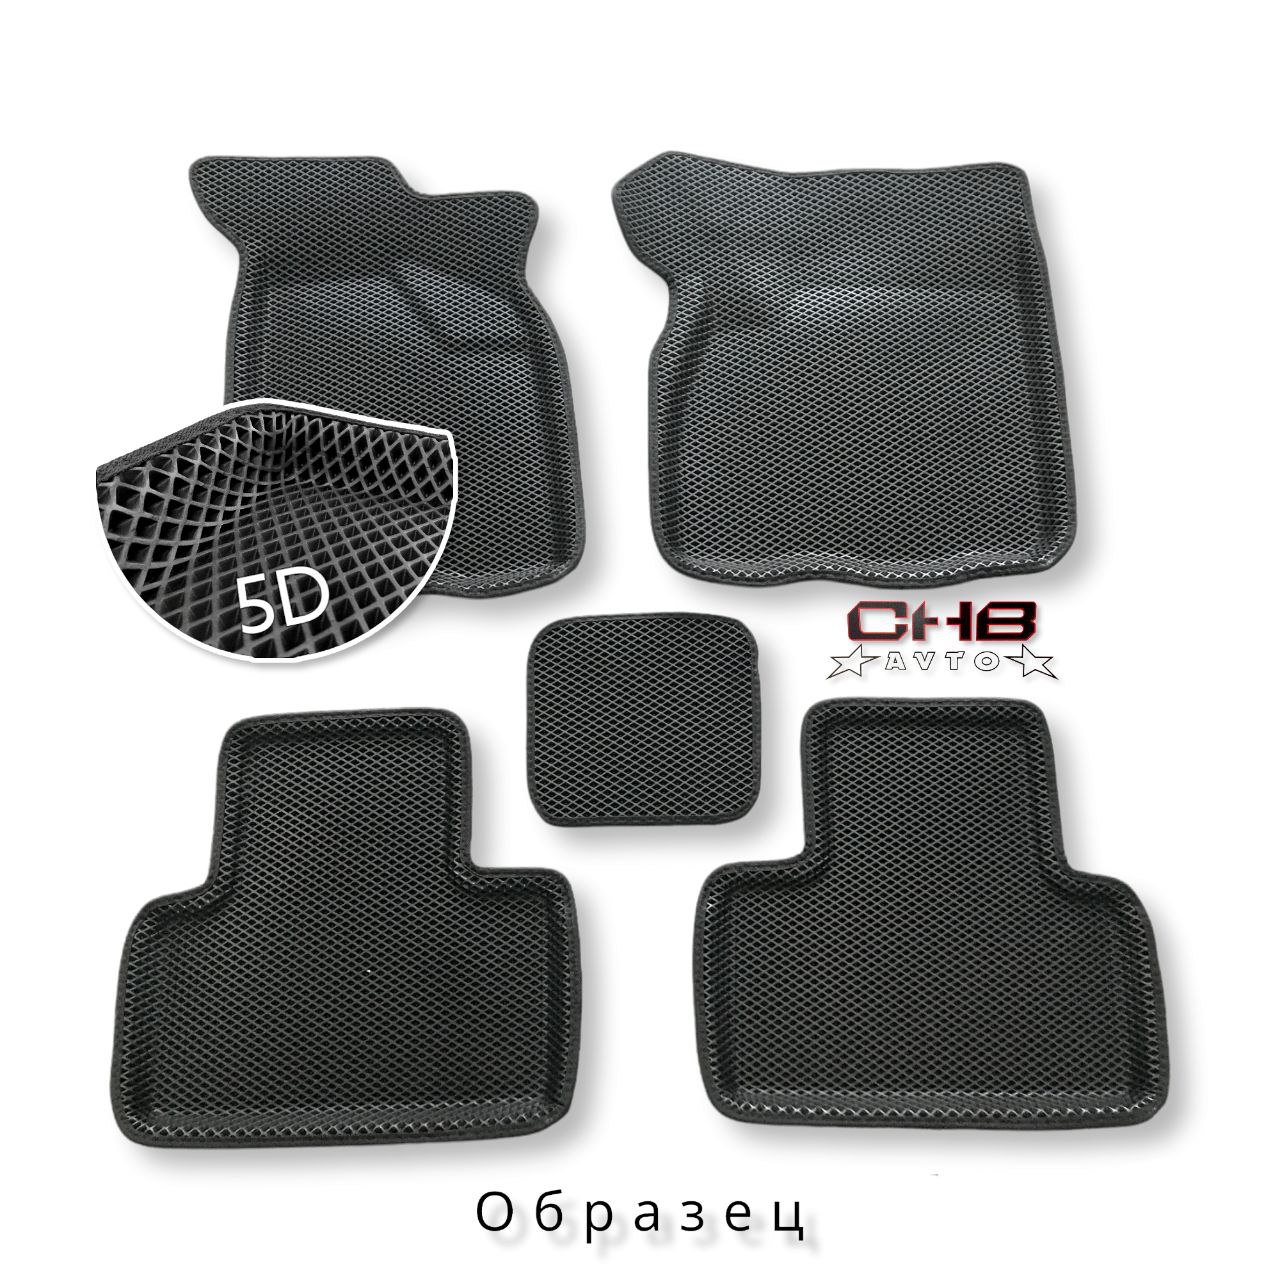 (ЕВА) Комплект полимерных 5D НАНО ковриков на Hyundai Accent, цвет ЧЁРНЫЙ/черный